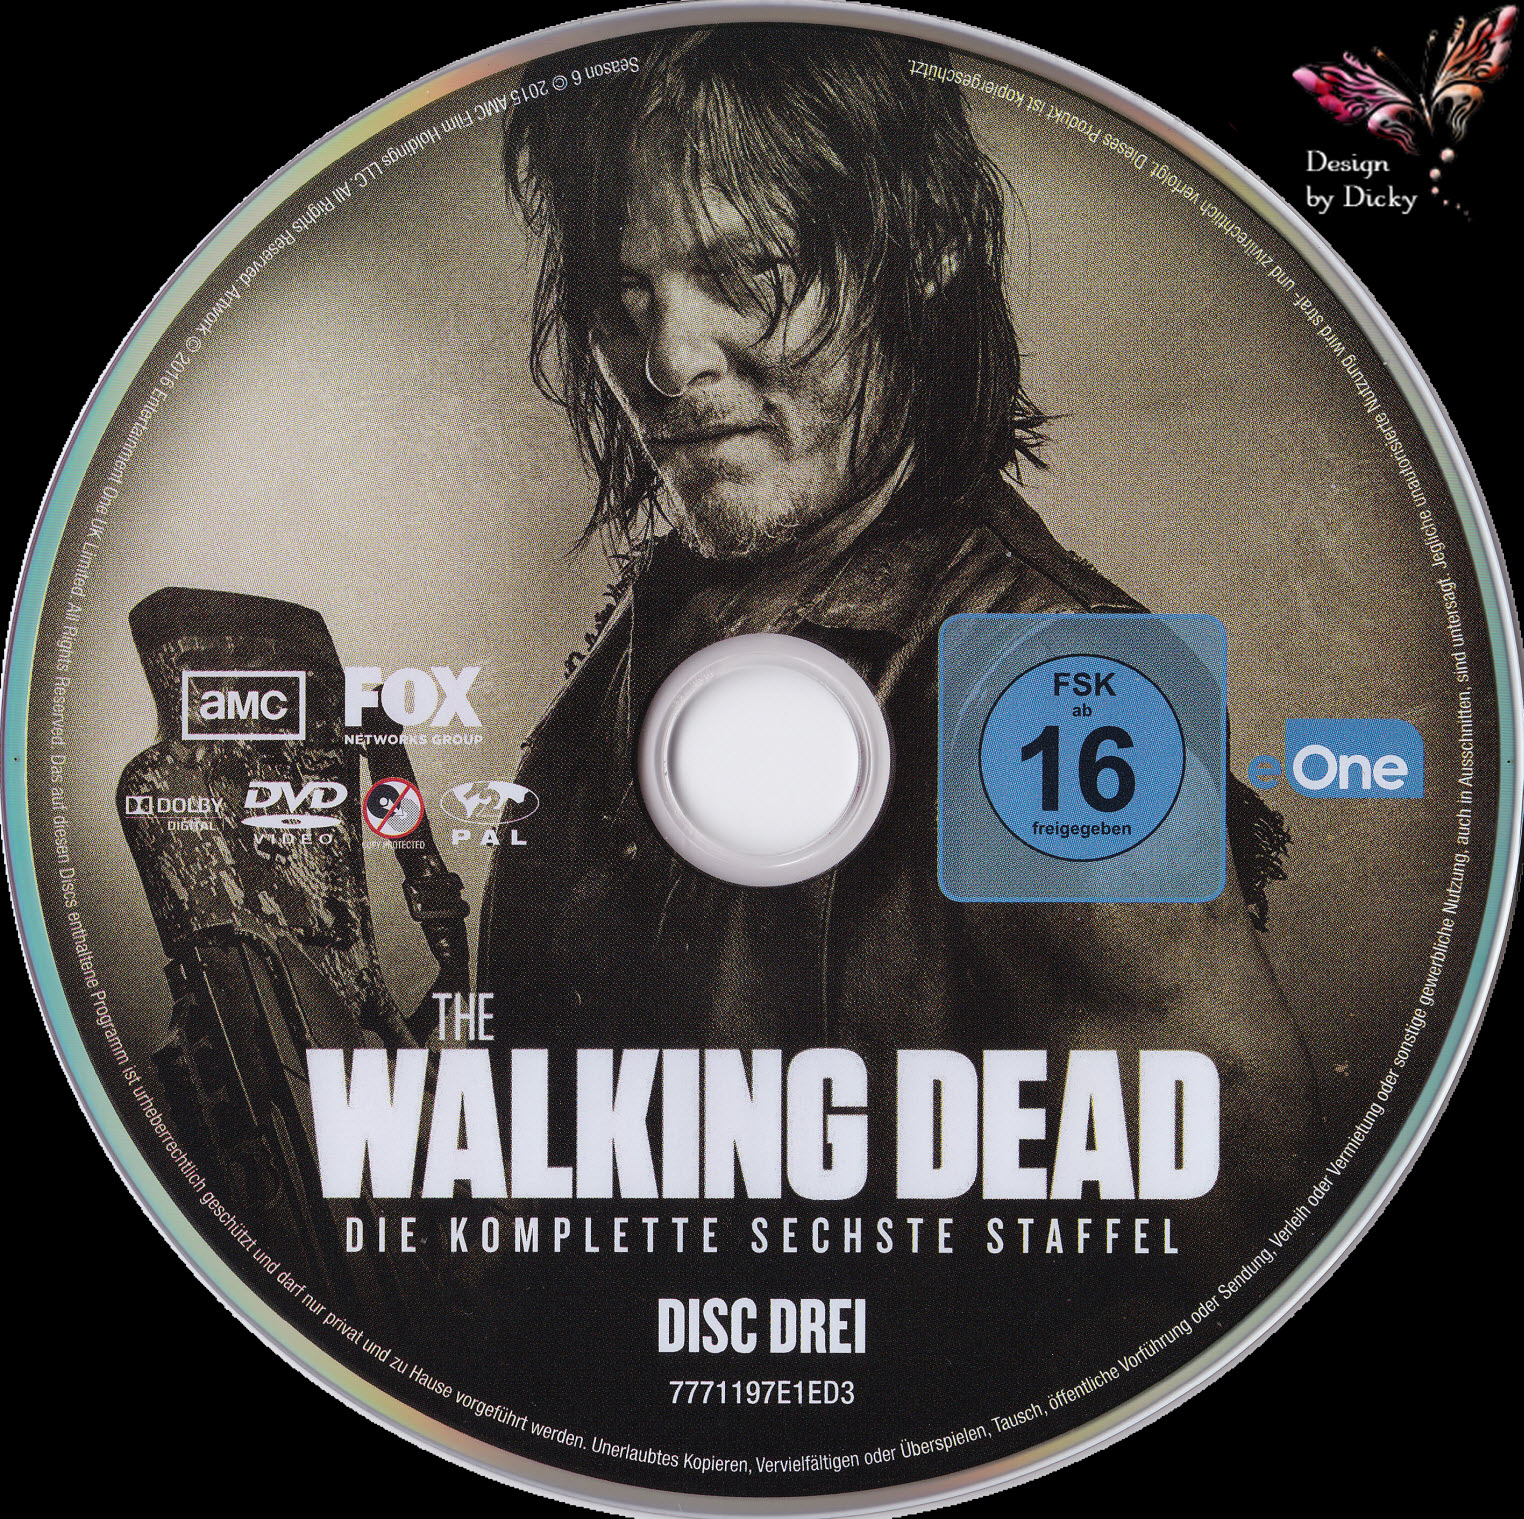 The Walking Dead Staffel 6 German Dvd Covers 